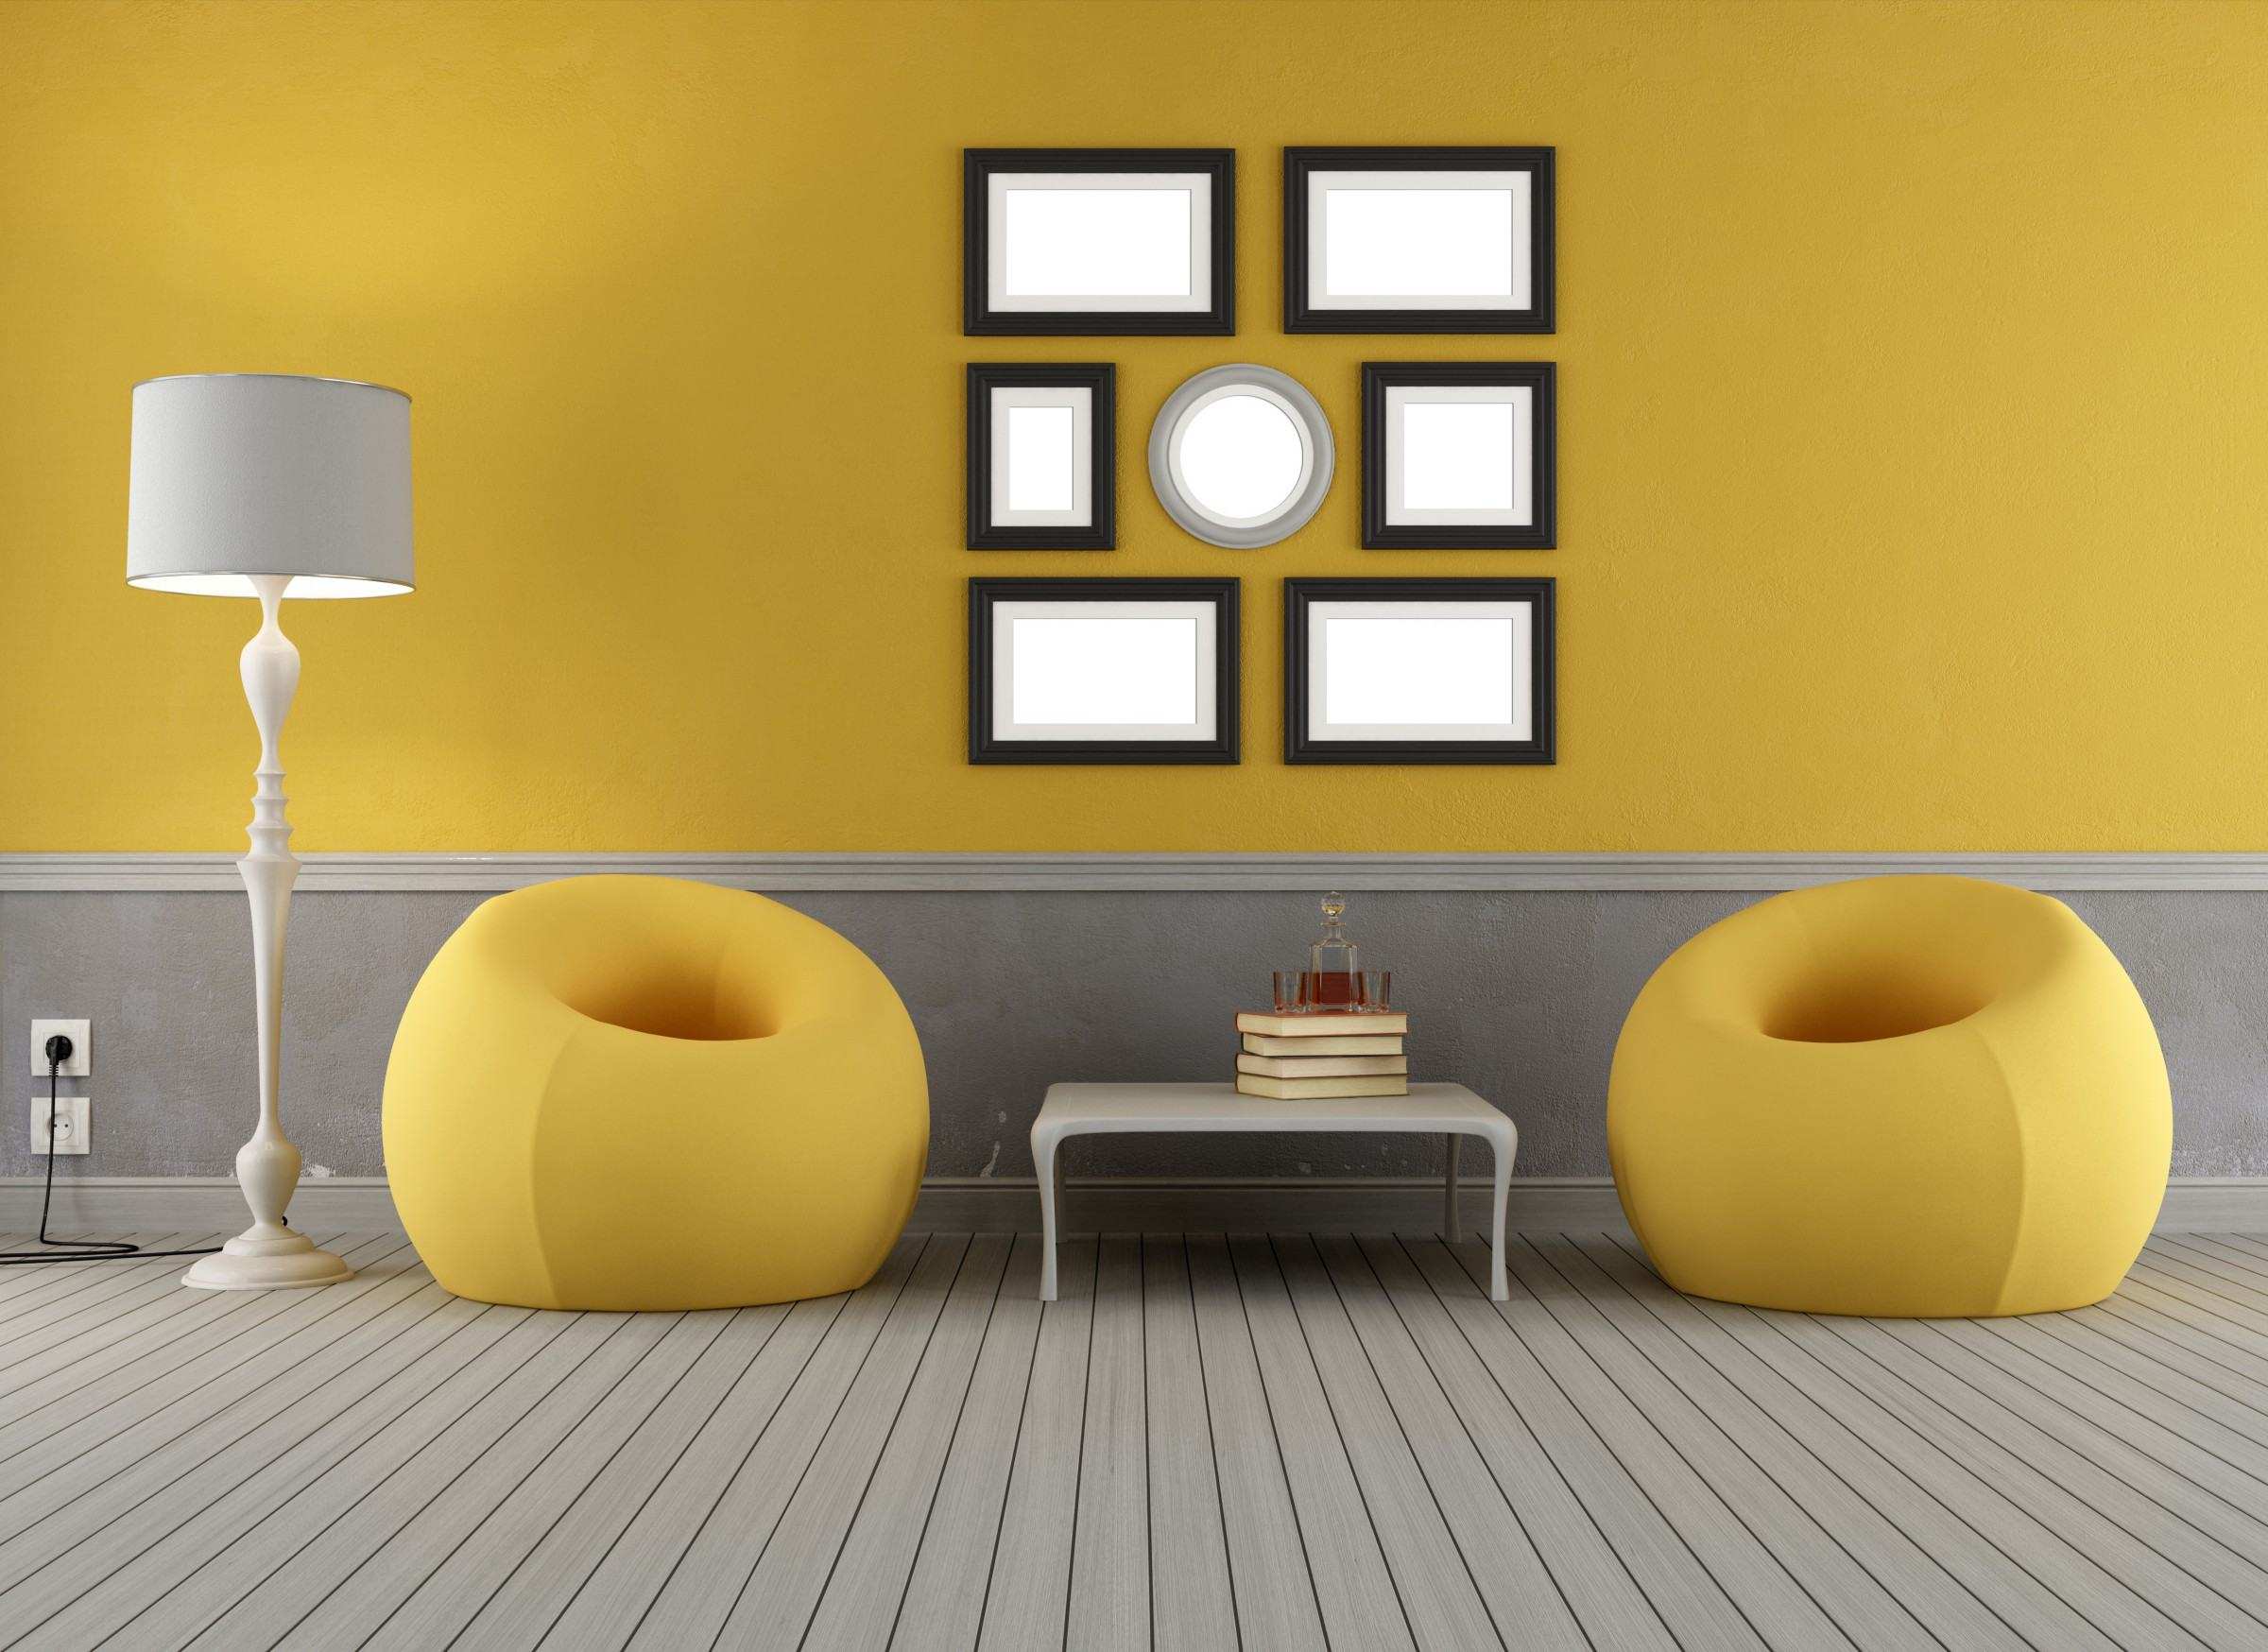 Un exemple d'utilisation de jaune vif dans le décor d'un appartement